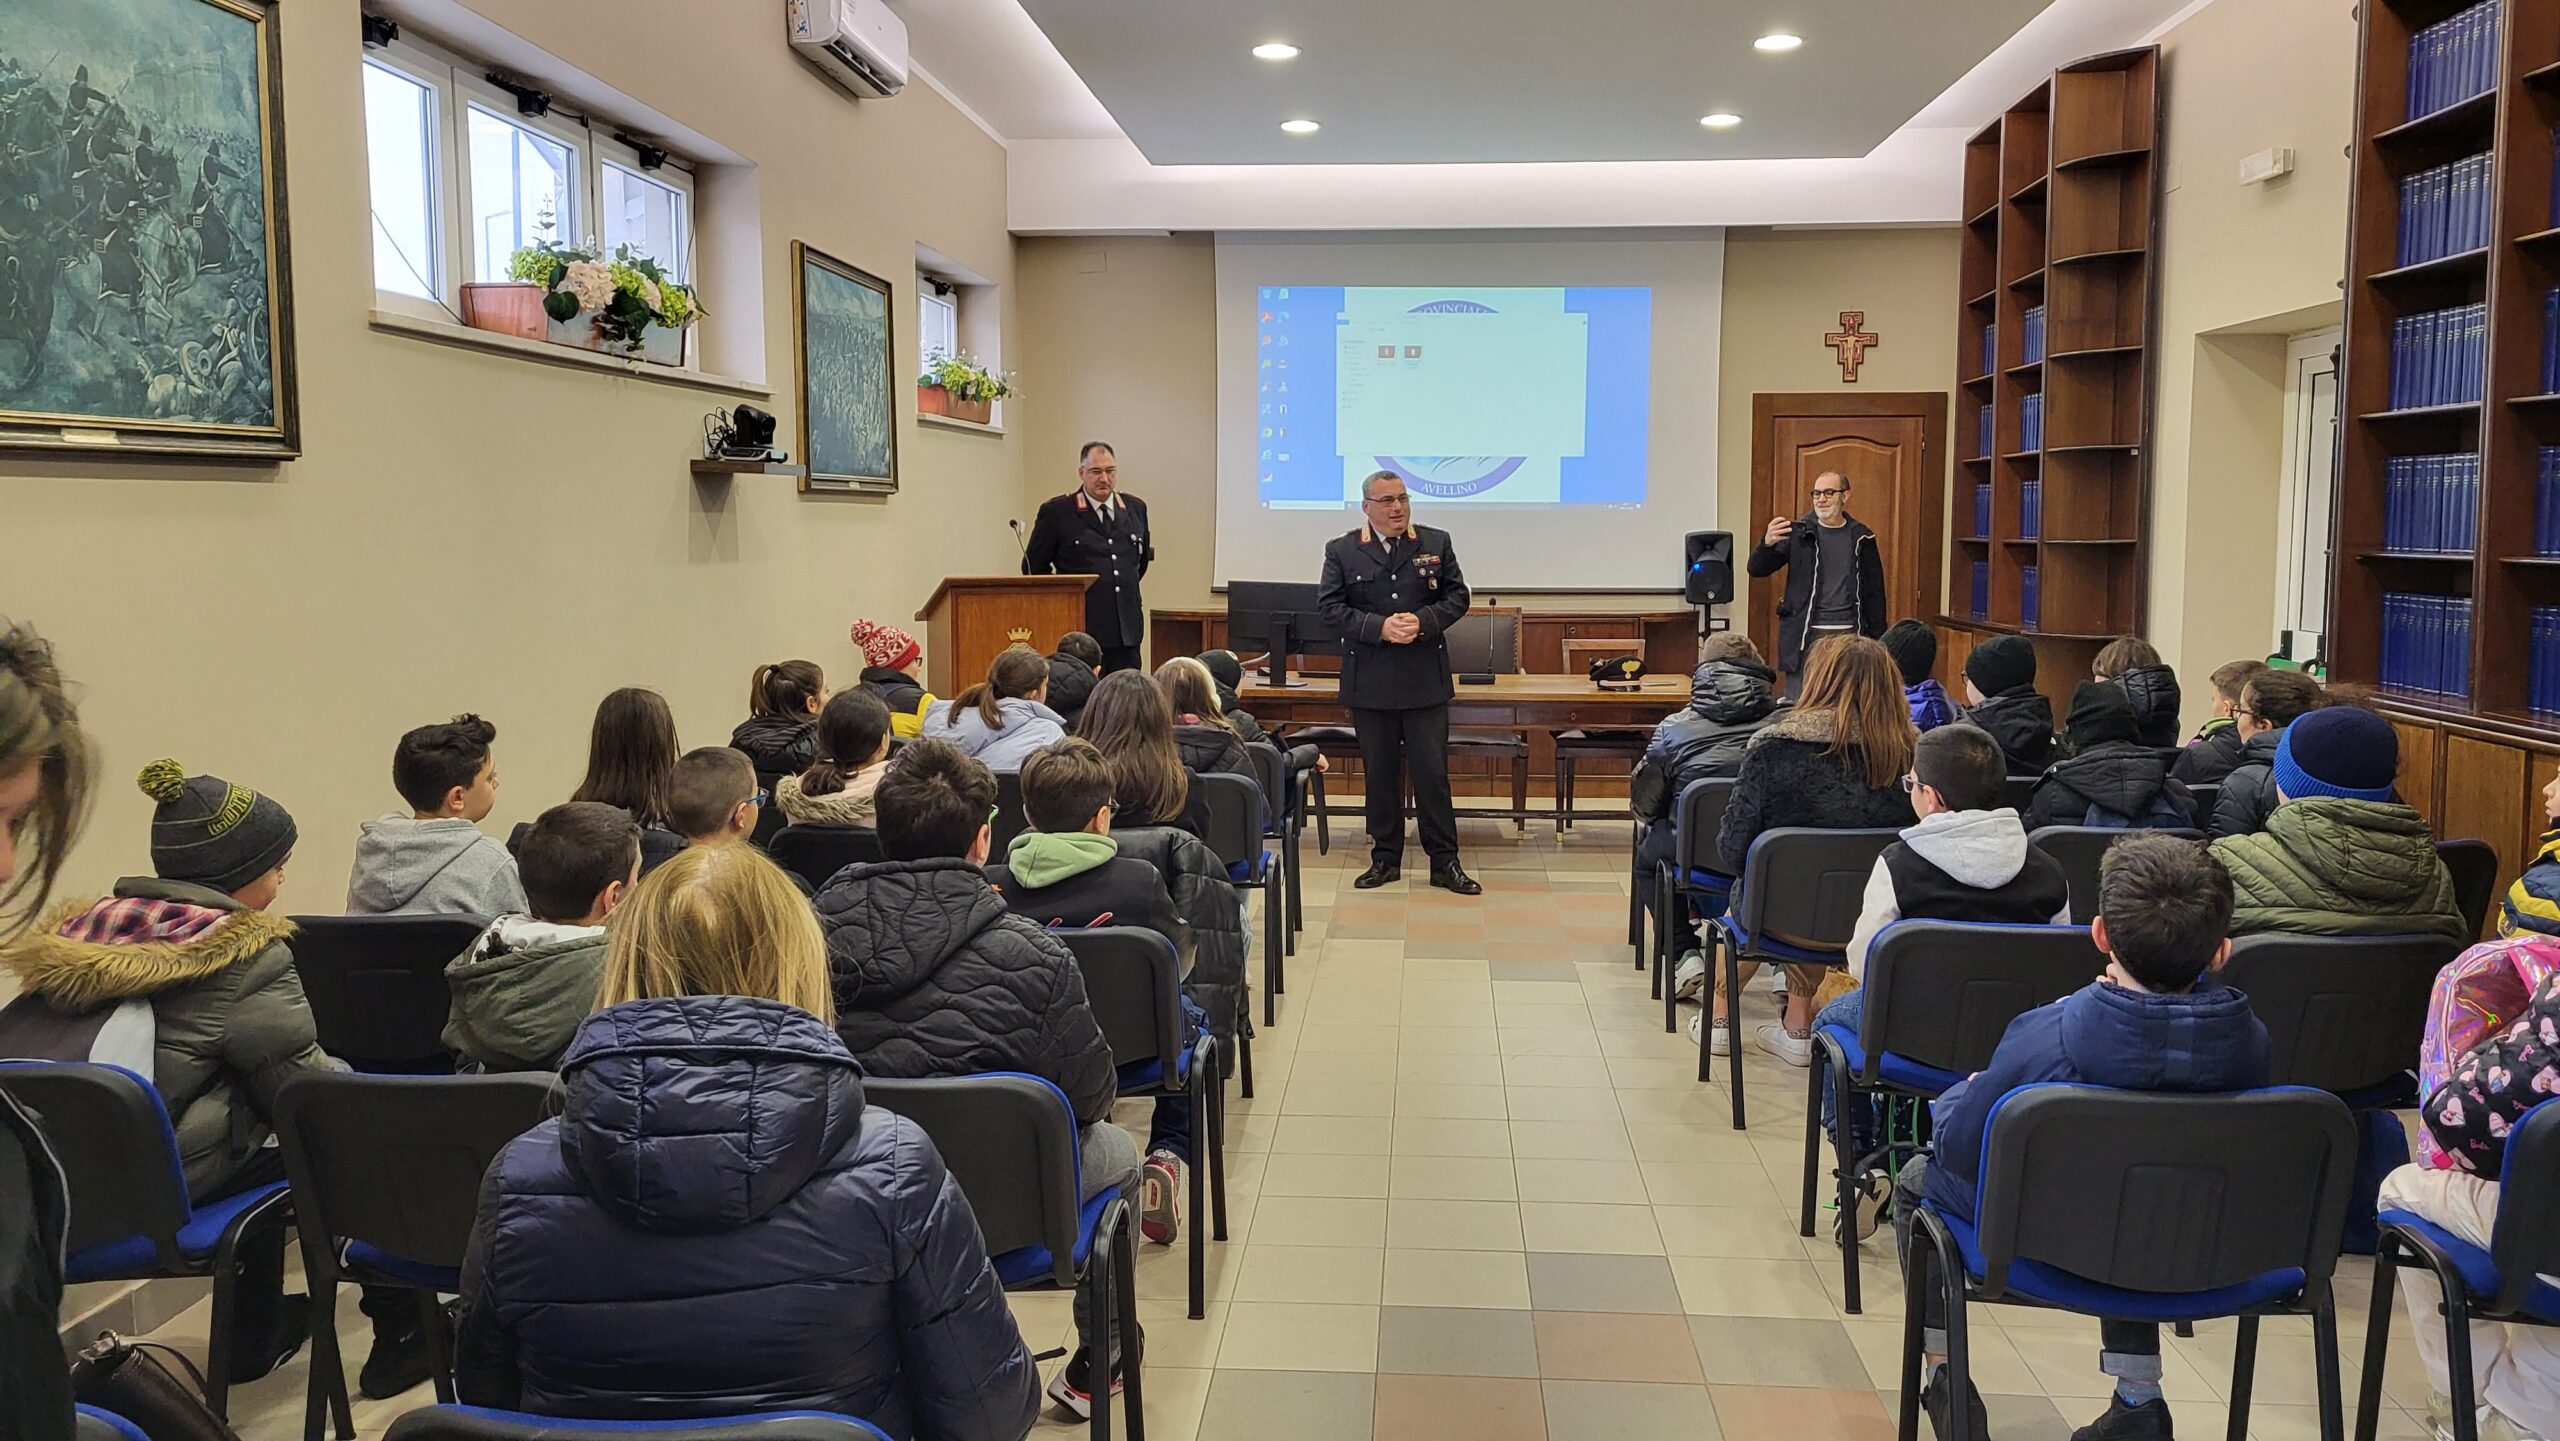 Gli alunni dell’Istituto Comprensivo Statale “Elodia Botto Picella” di Contrada in visita al Comando Provinciale Carabinieri